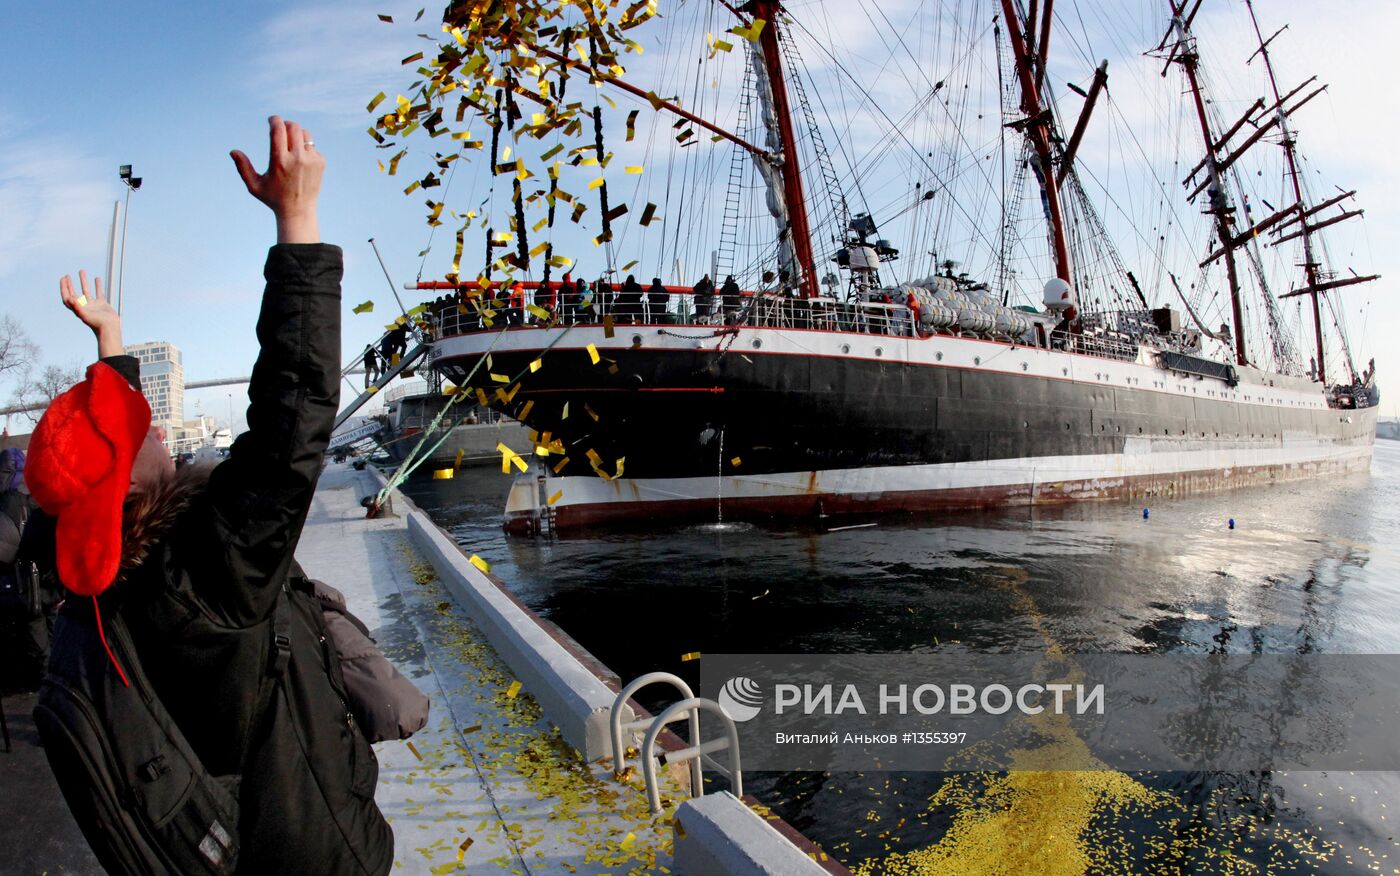 Прибытие барка "Седов" во Владивосток